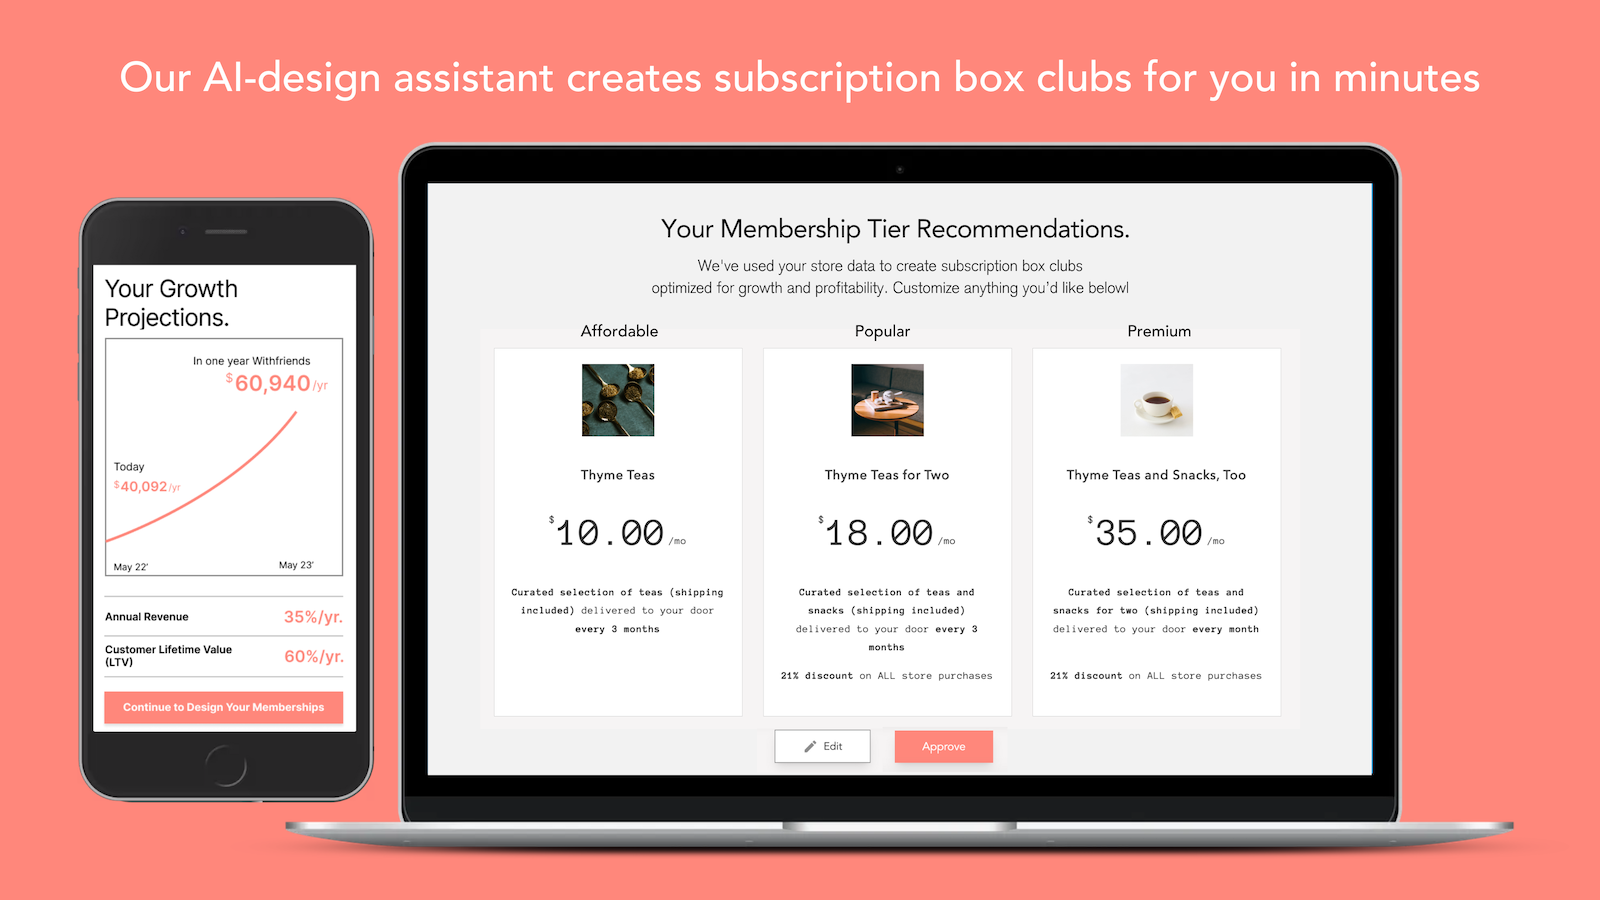 Notre assistant de conception IA crée des clubs de boîtes d'abonnement pour vous